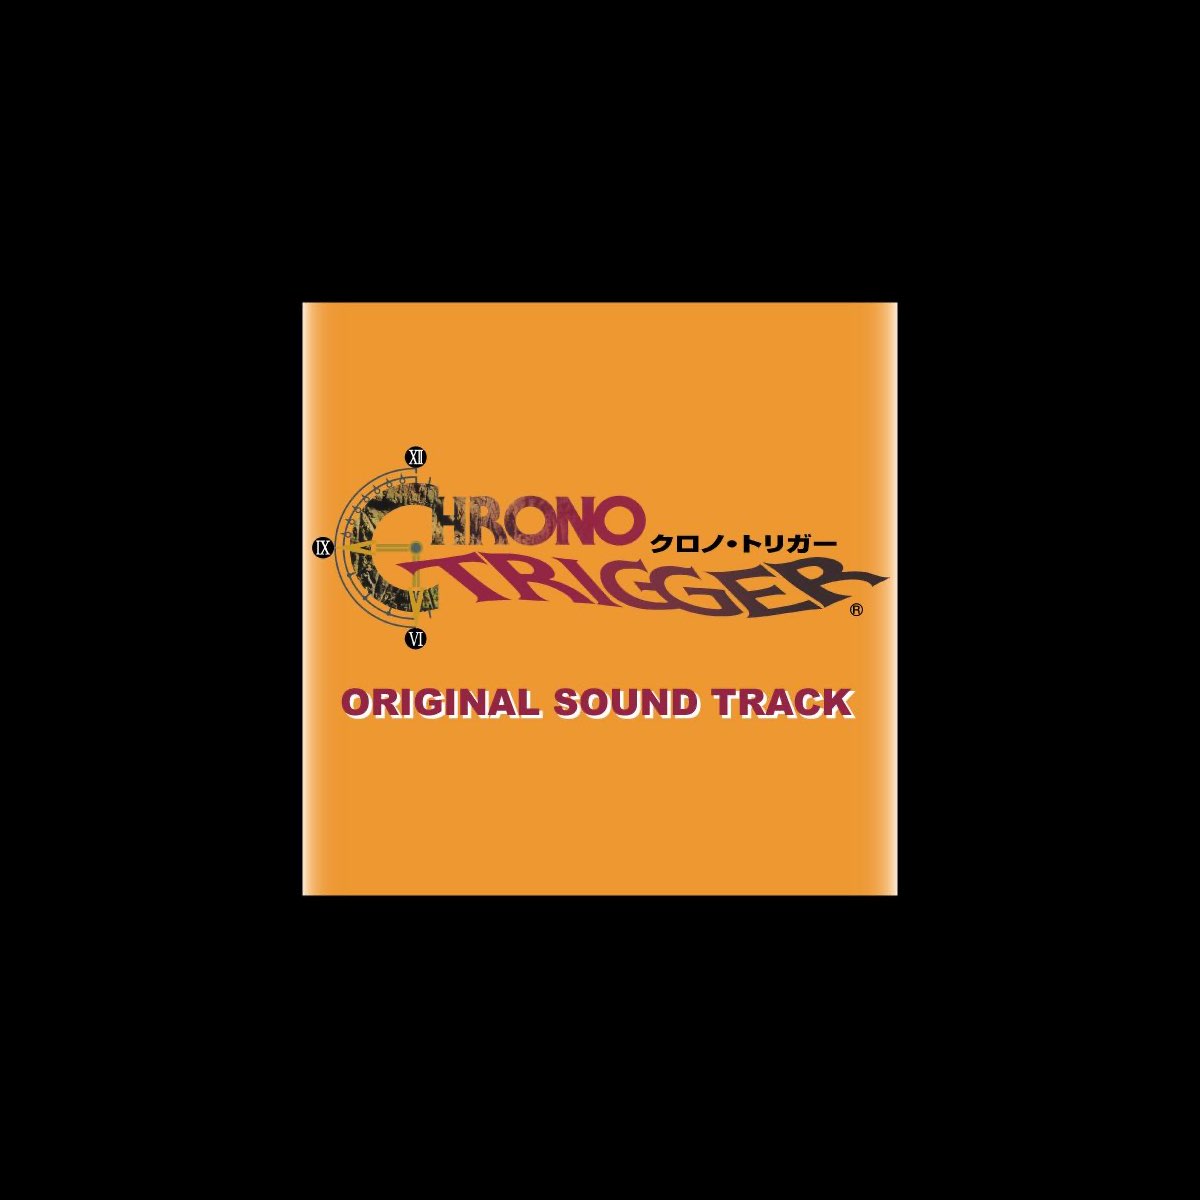 クロノ・トリガー : ニンテンドーDS版 : オリジナル・サウンドトラック 